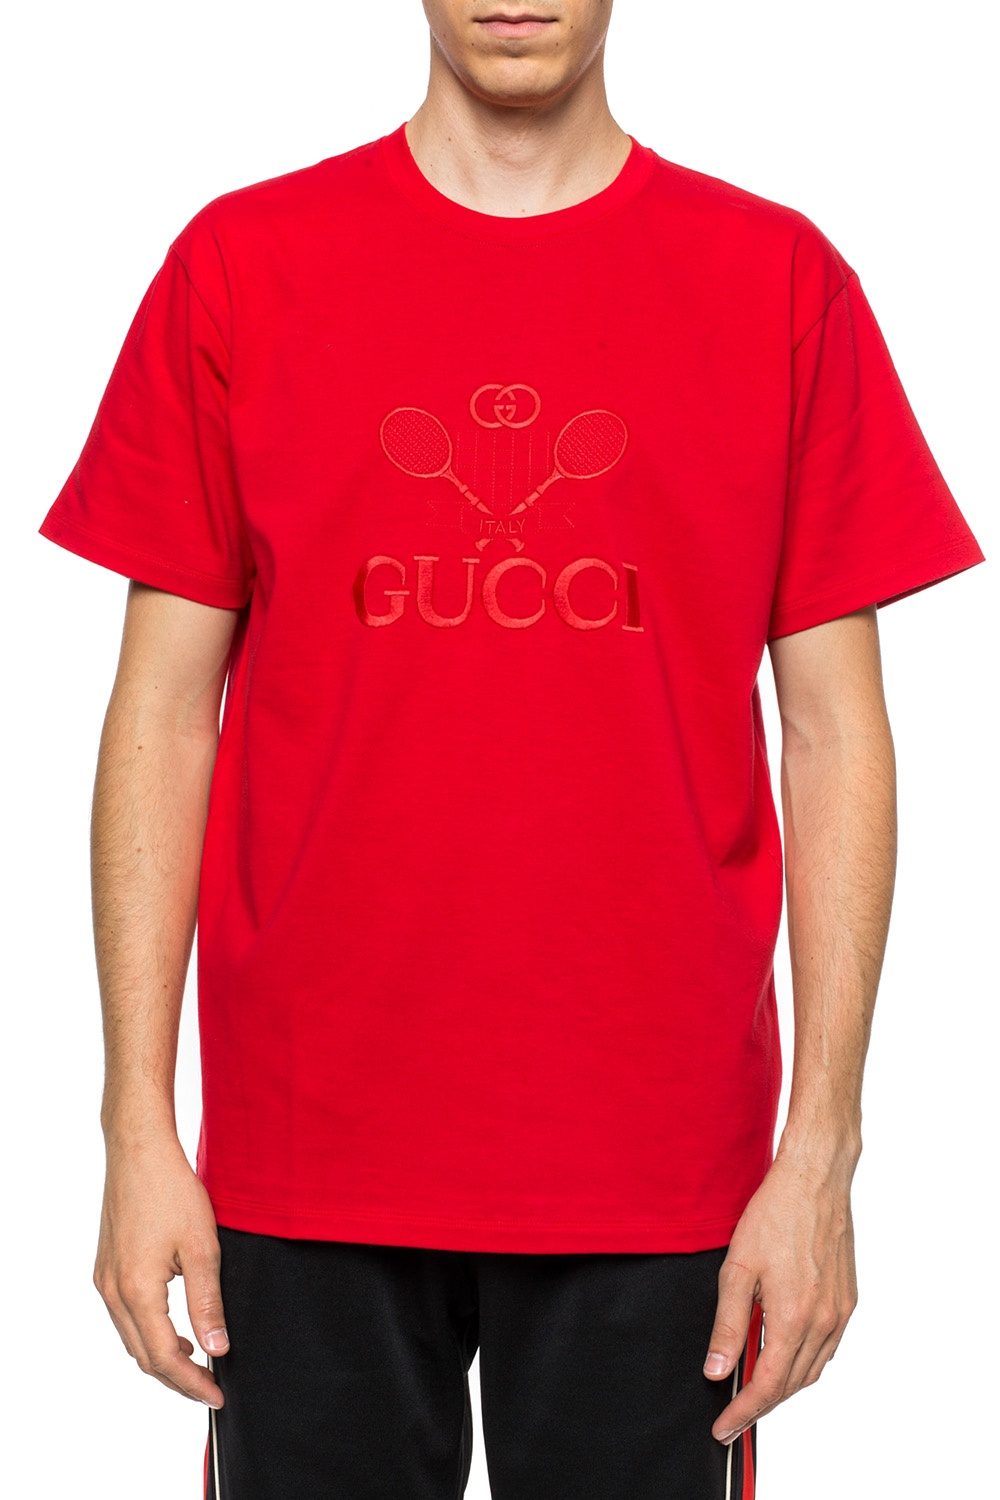 La collaboration Gucci x Palace en détail   shirt Gucci